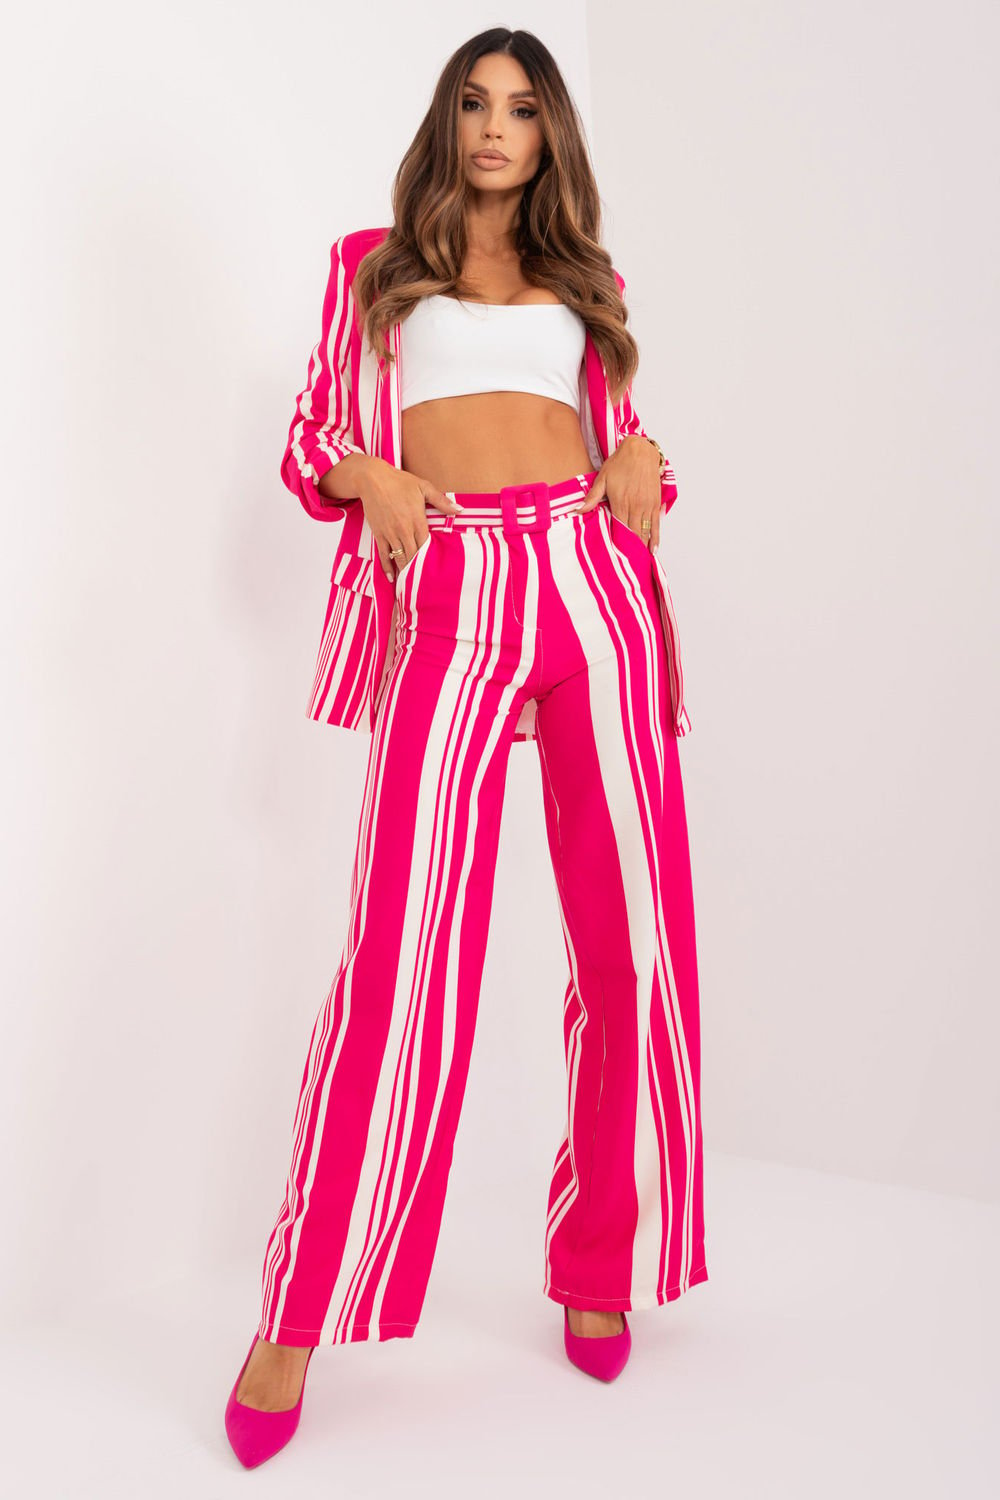  Women trousers model 197042 Italy Moda  pink